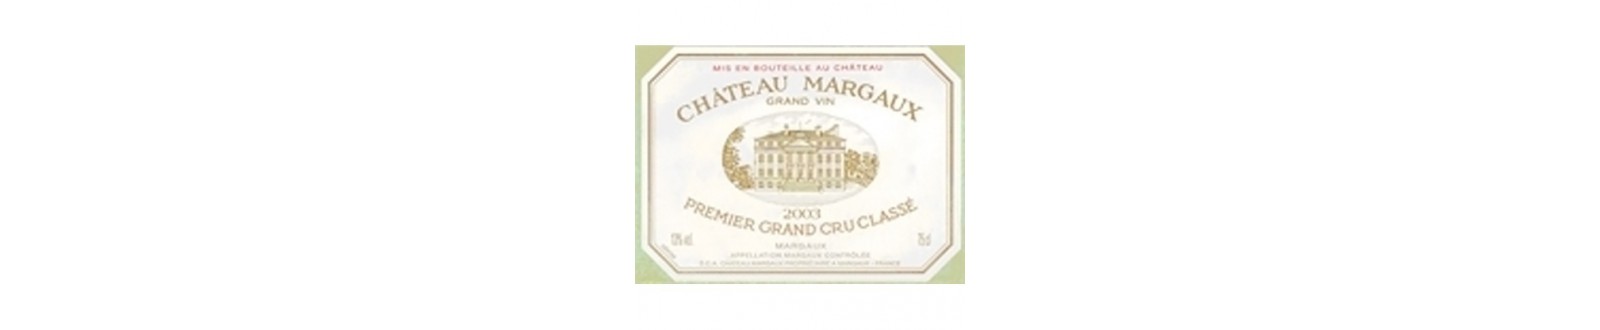 Vin(s) du Château Margaux